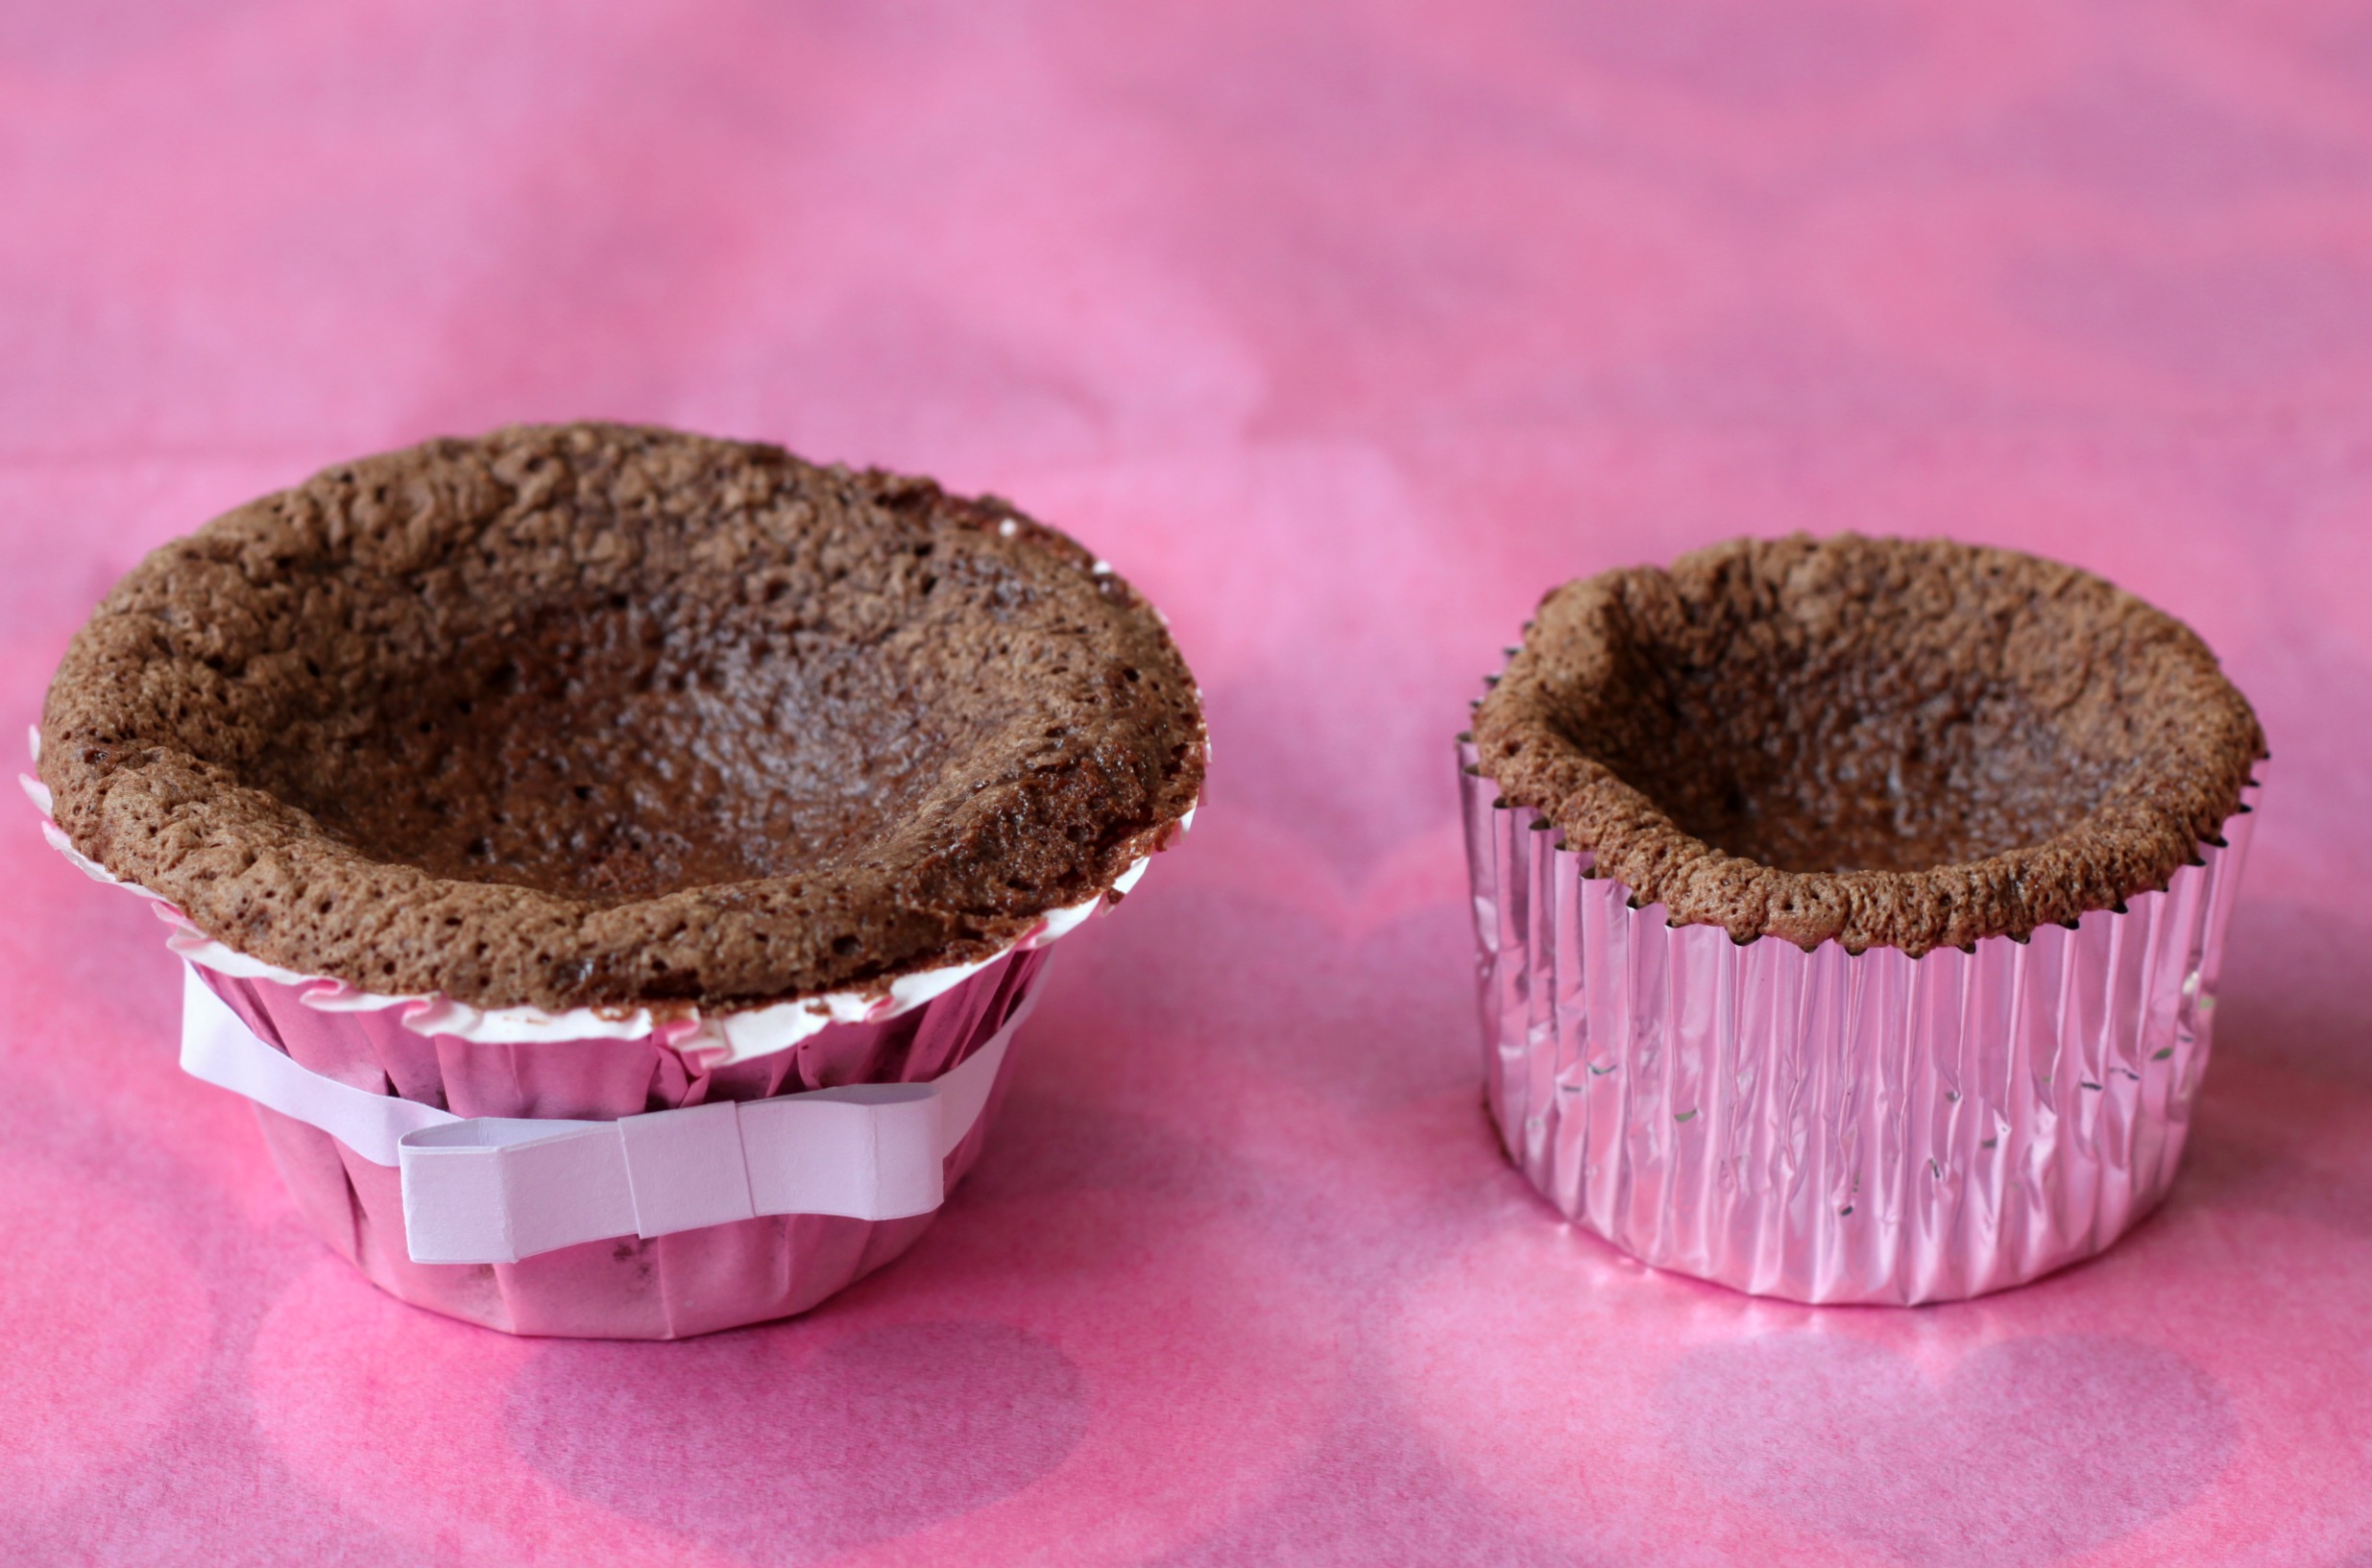 Flourless chocolate cupcakes